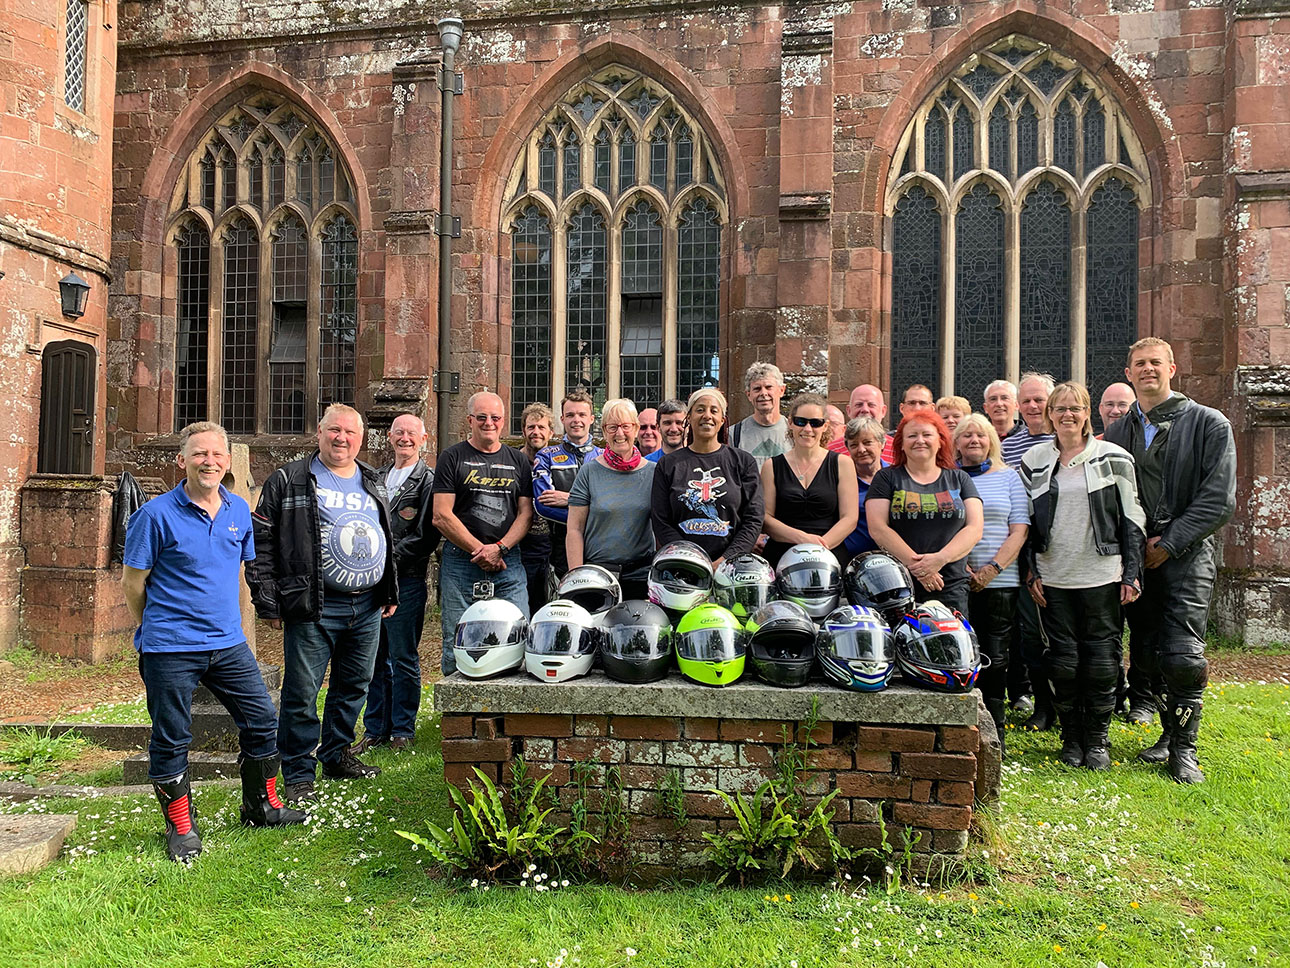 Bell-Ringing Motorcyclists at Crediton Church